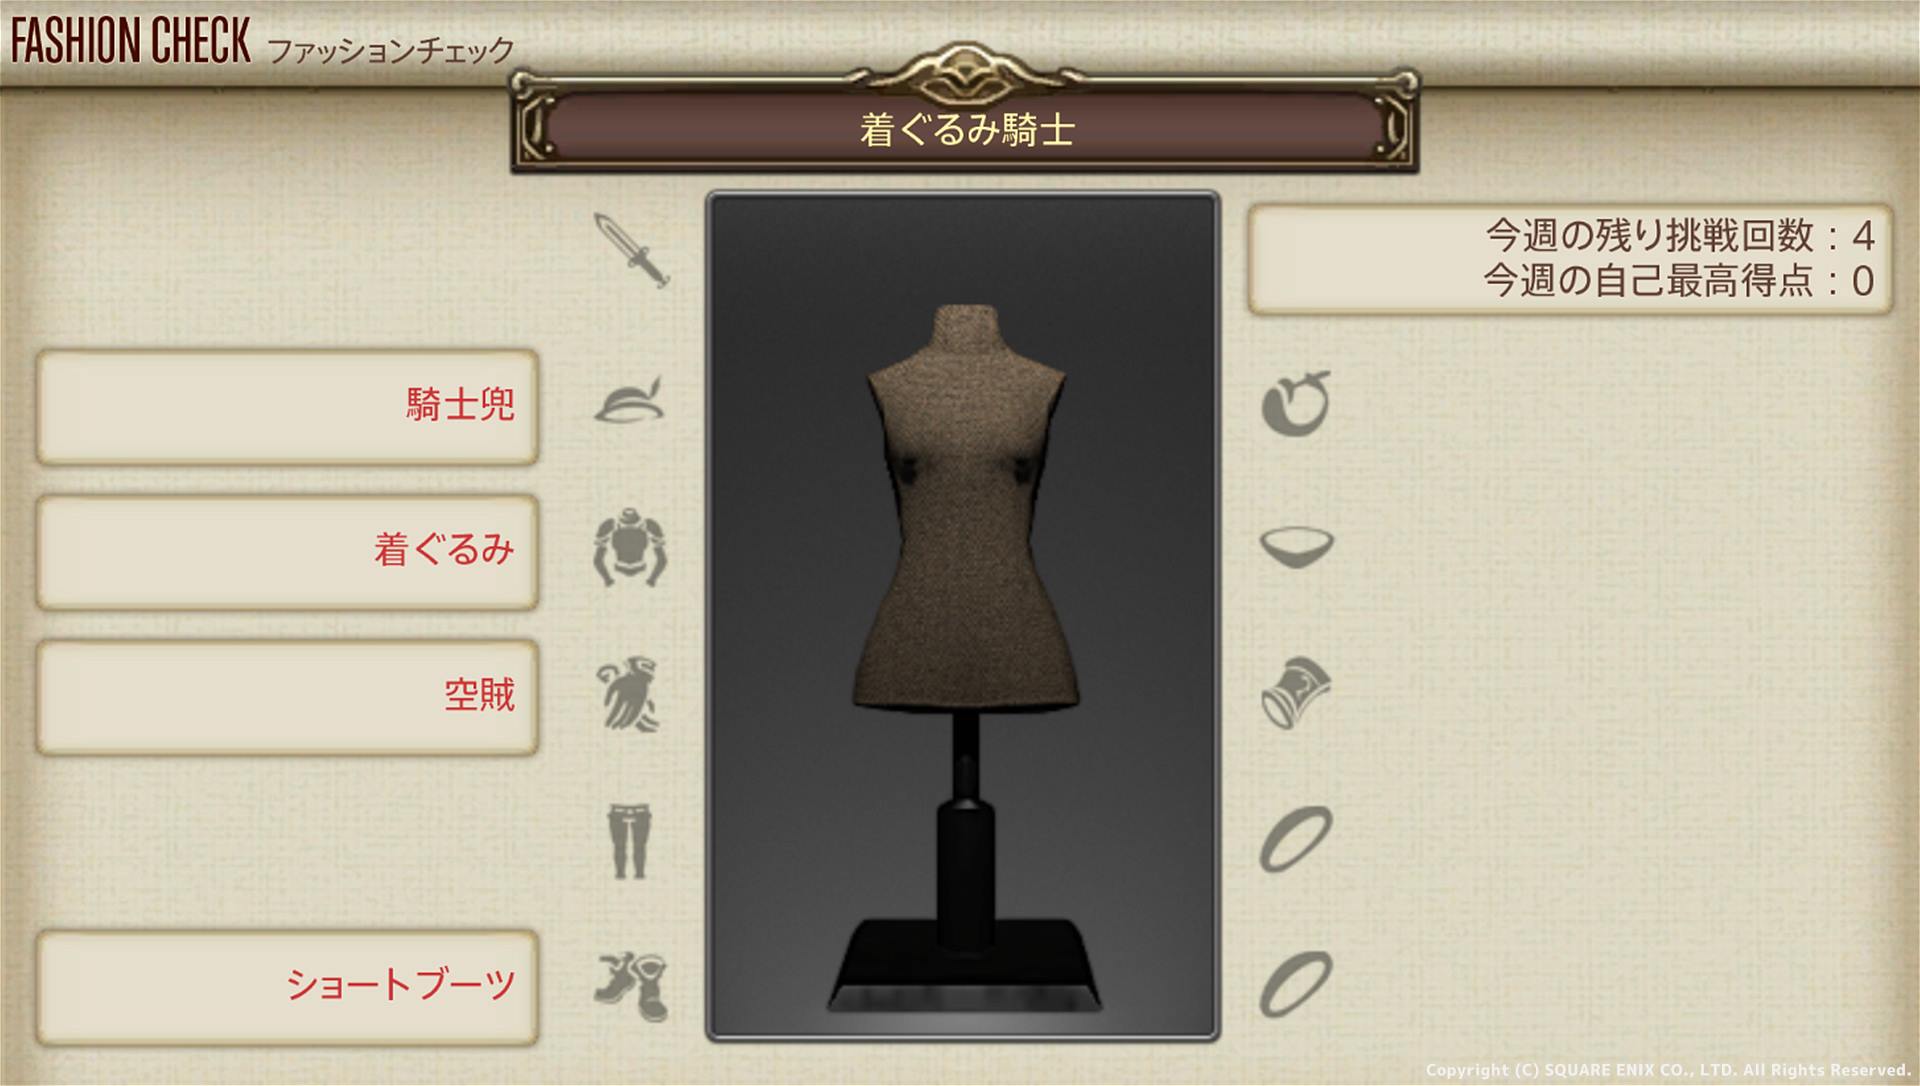 【FF14】ファッションチェック 12月6日発表のテーマは？「着ぐるみ騎士」